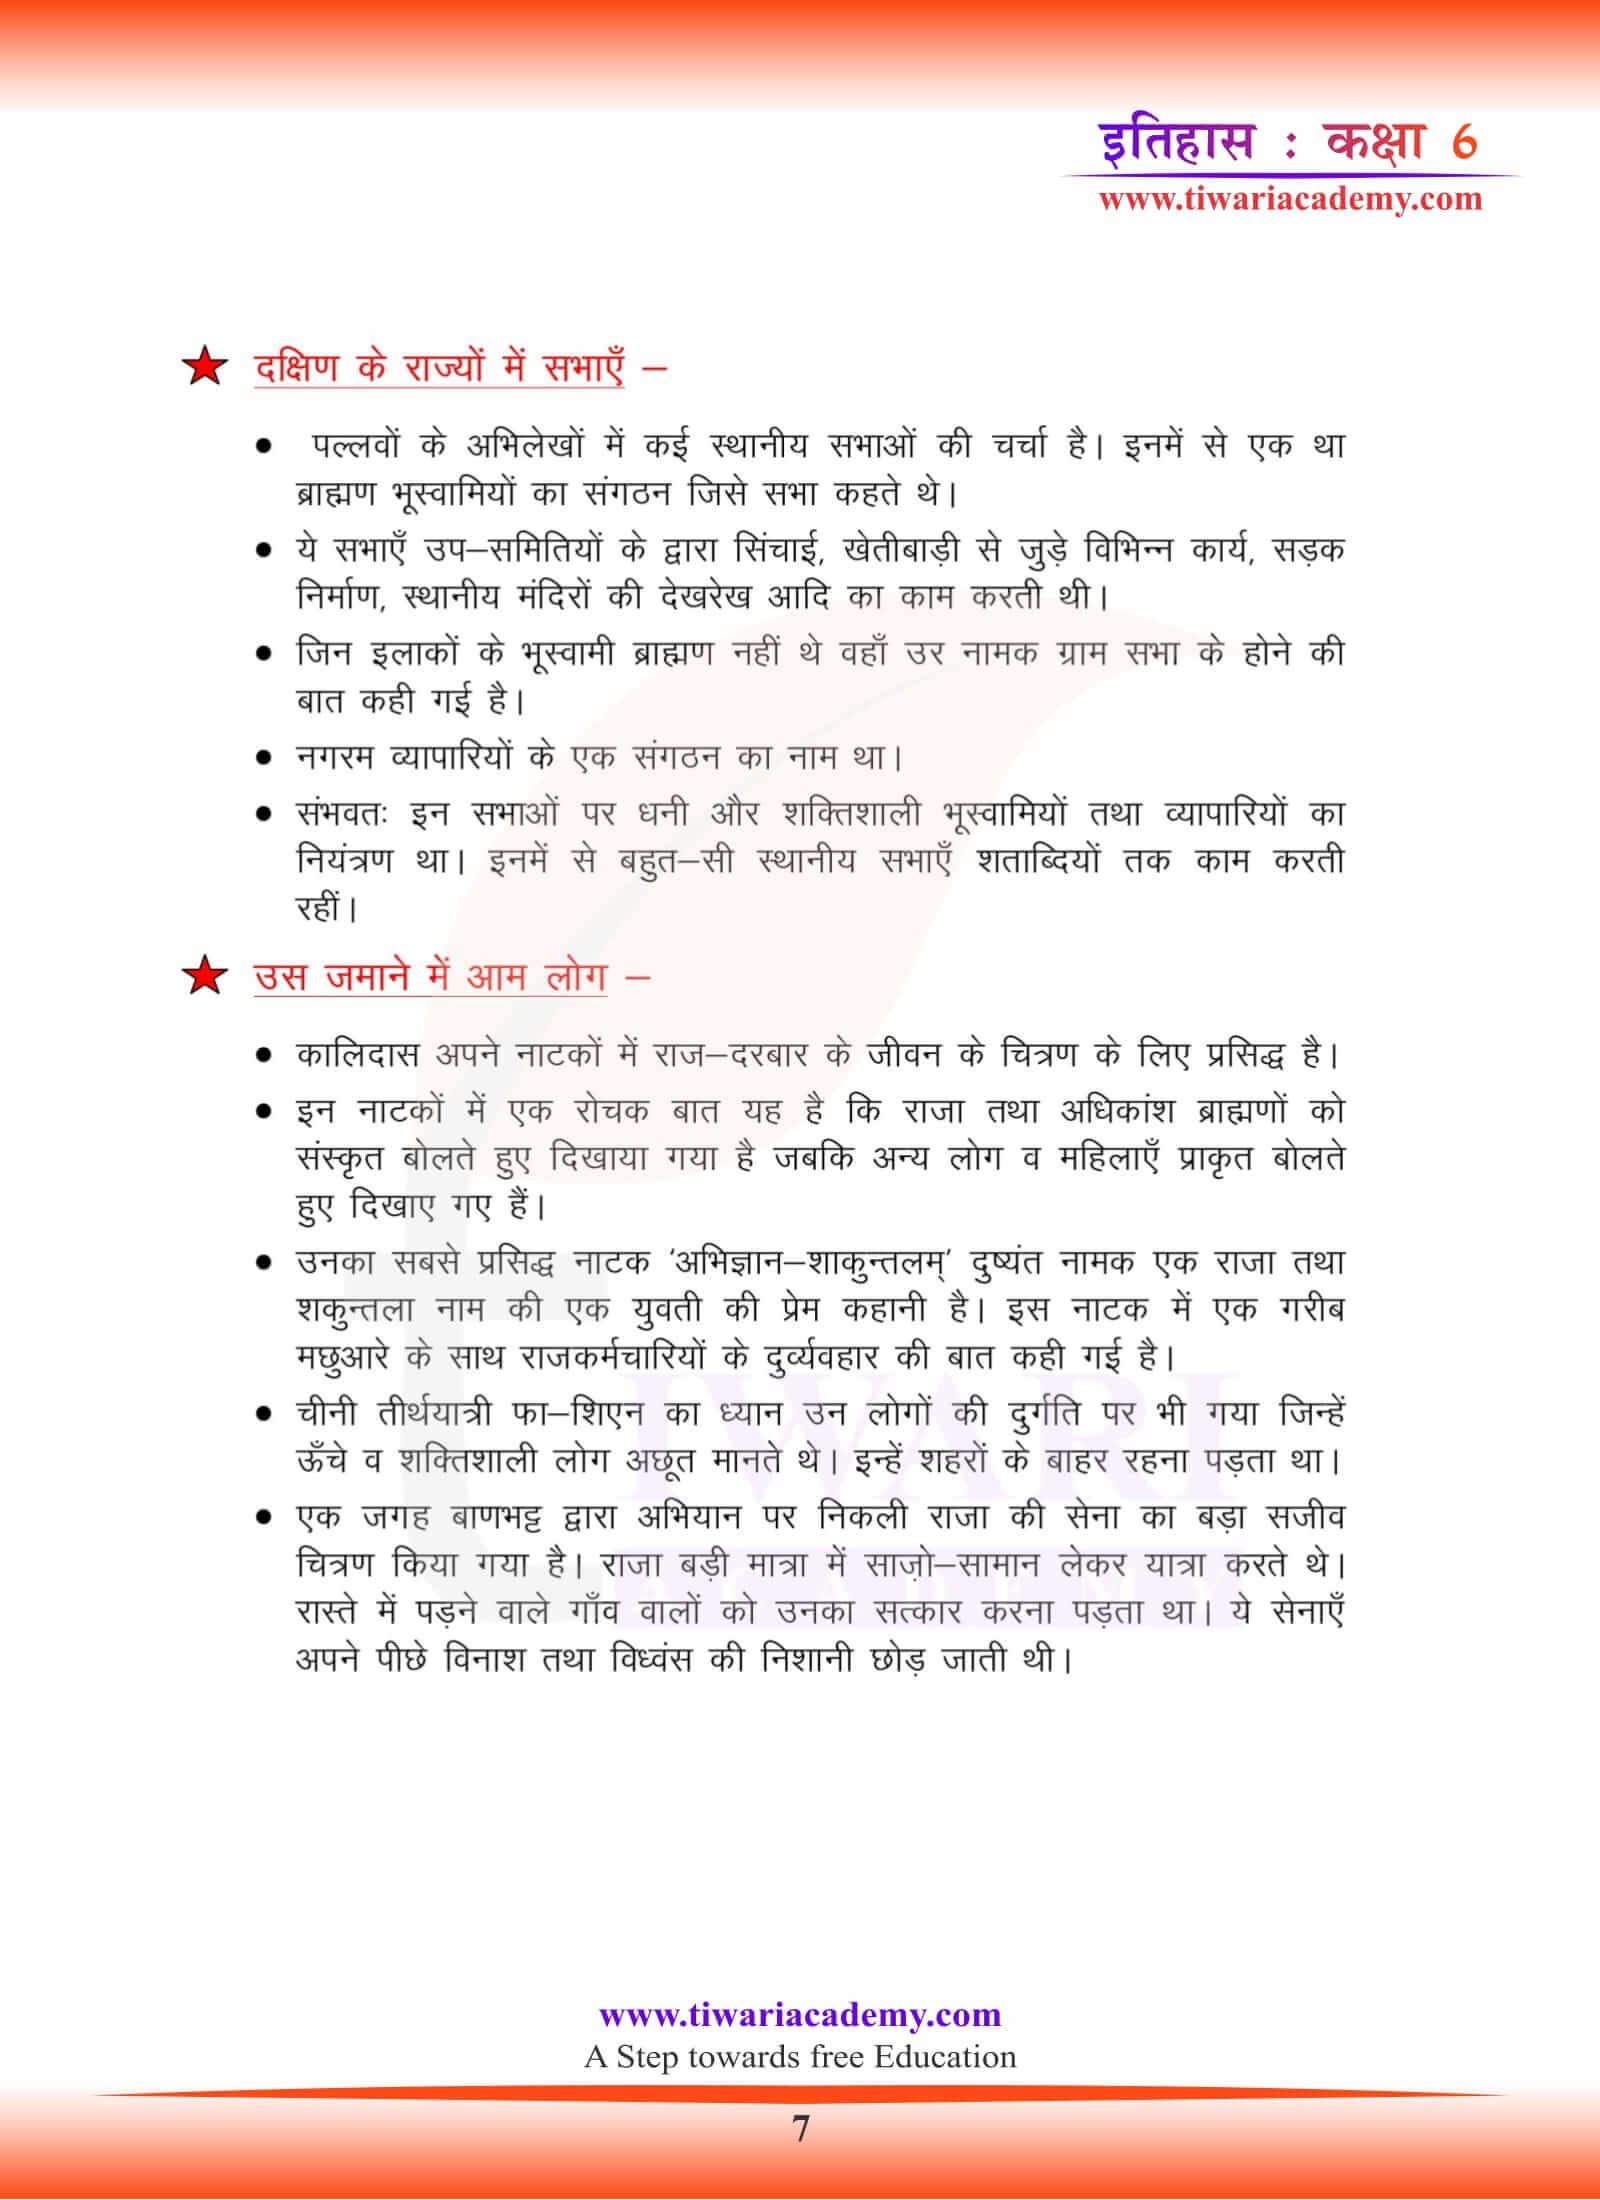 कक्षा 6 इतिहास अध्याय 10 अध्ययन सामग्री हिंदी में